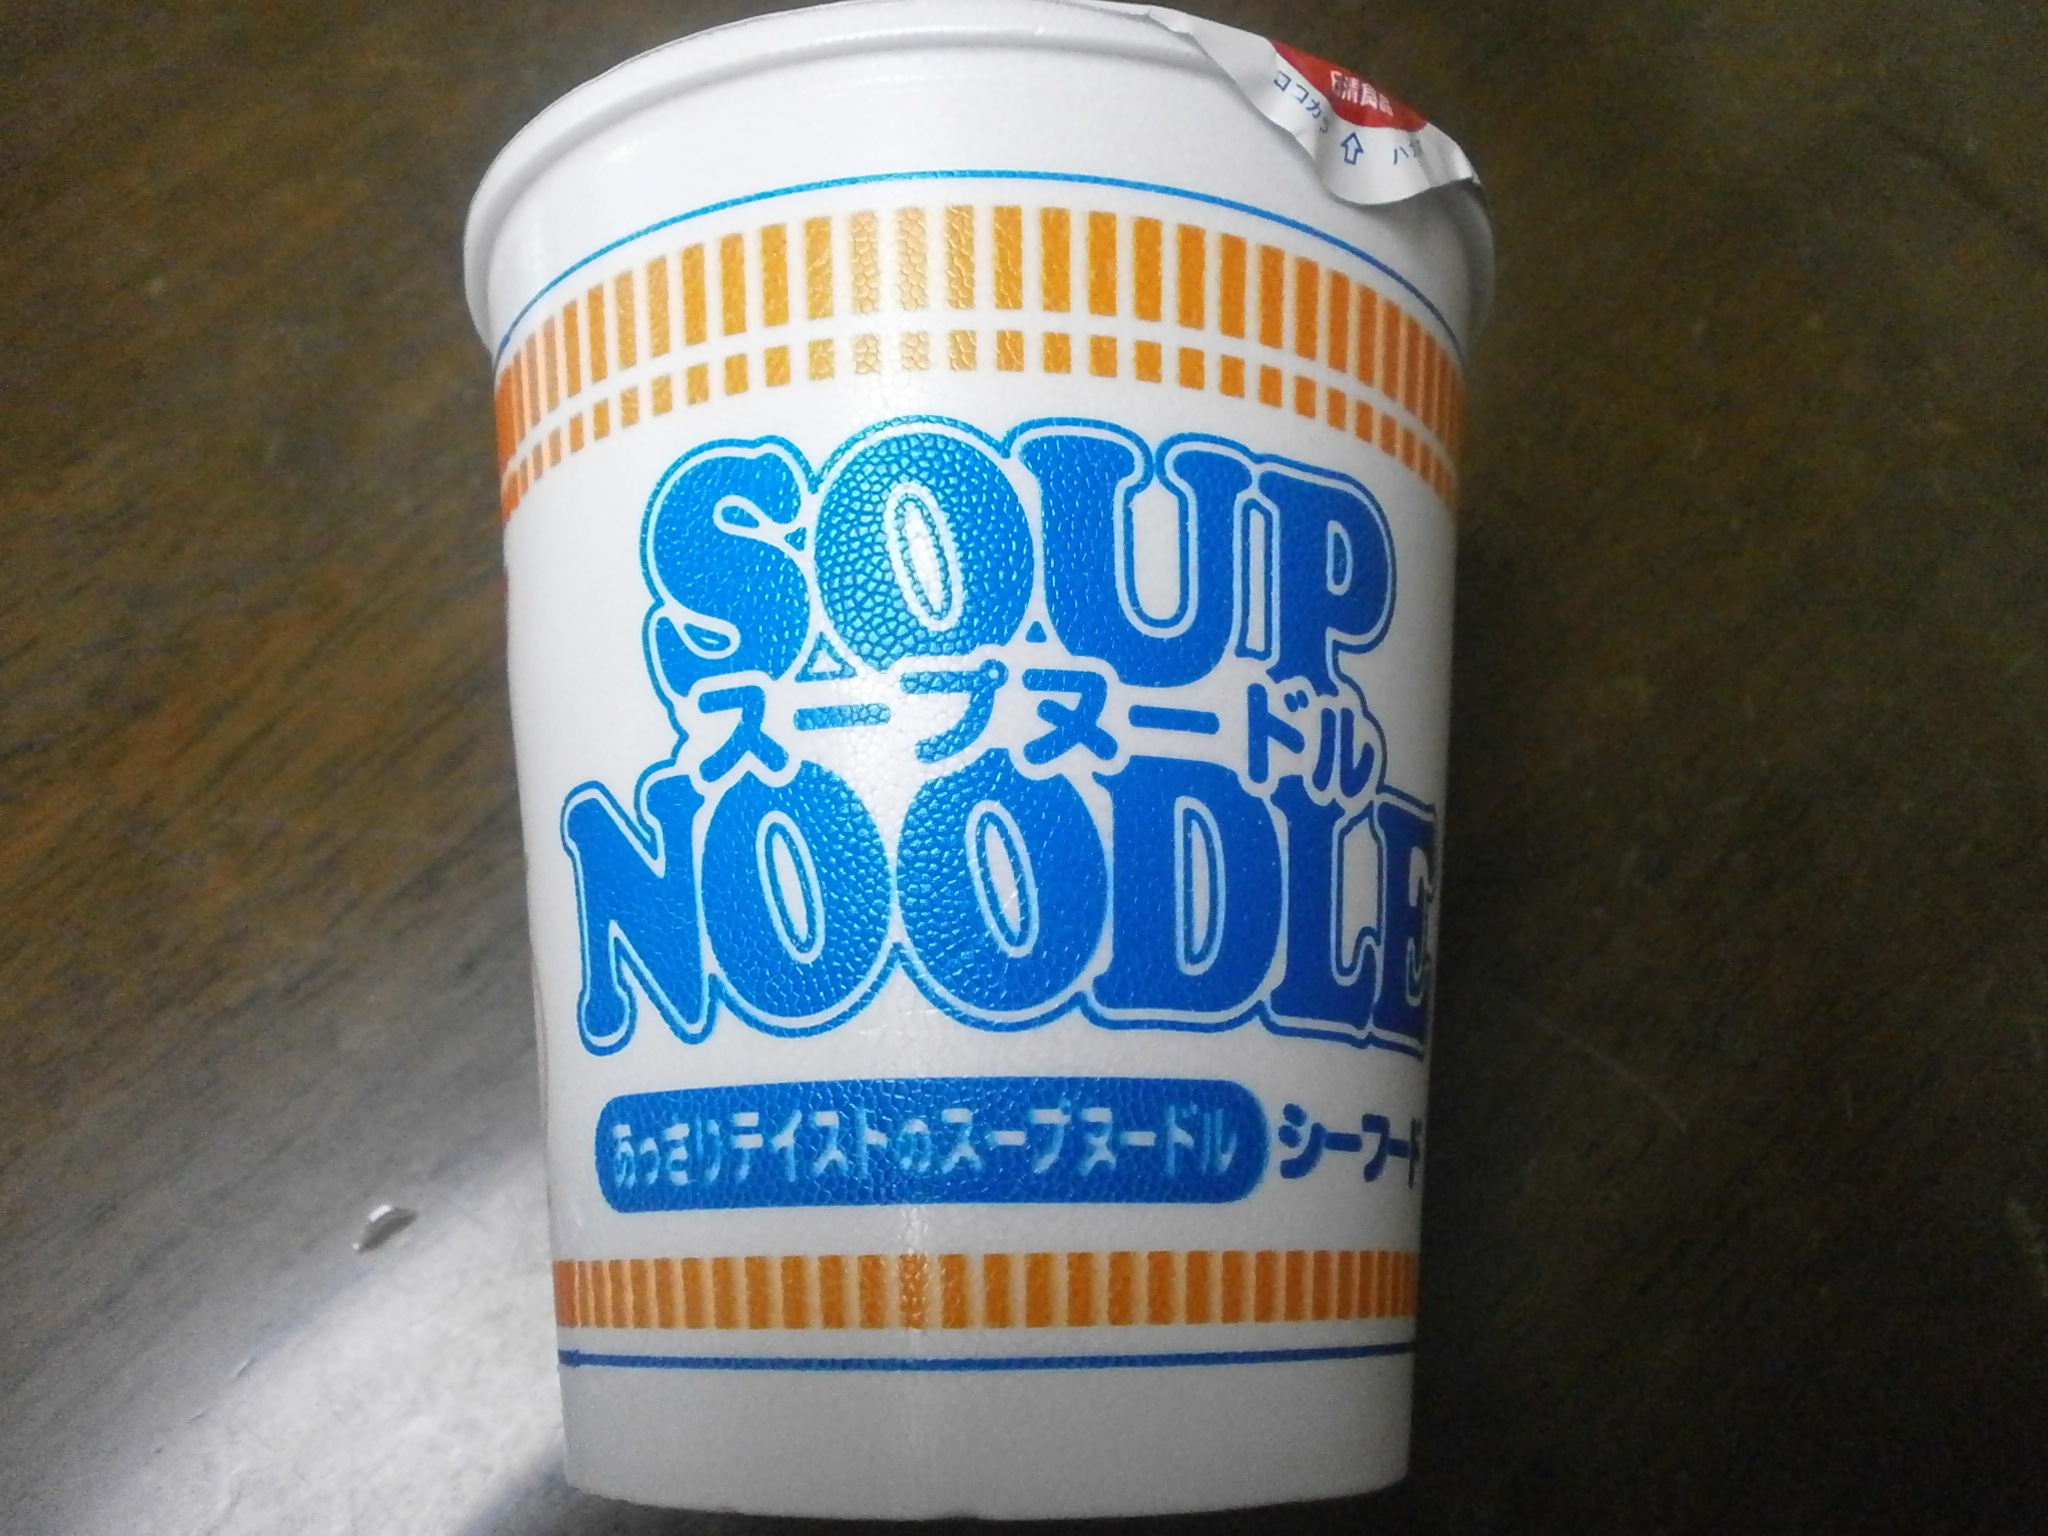 Quelle haute teneur en calories? Noodle Soup (Curry)? Soupe de nouilles (fruits de mer)?